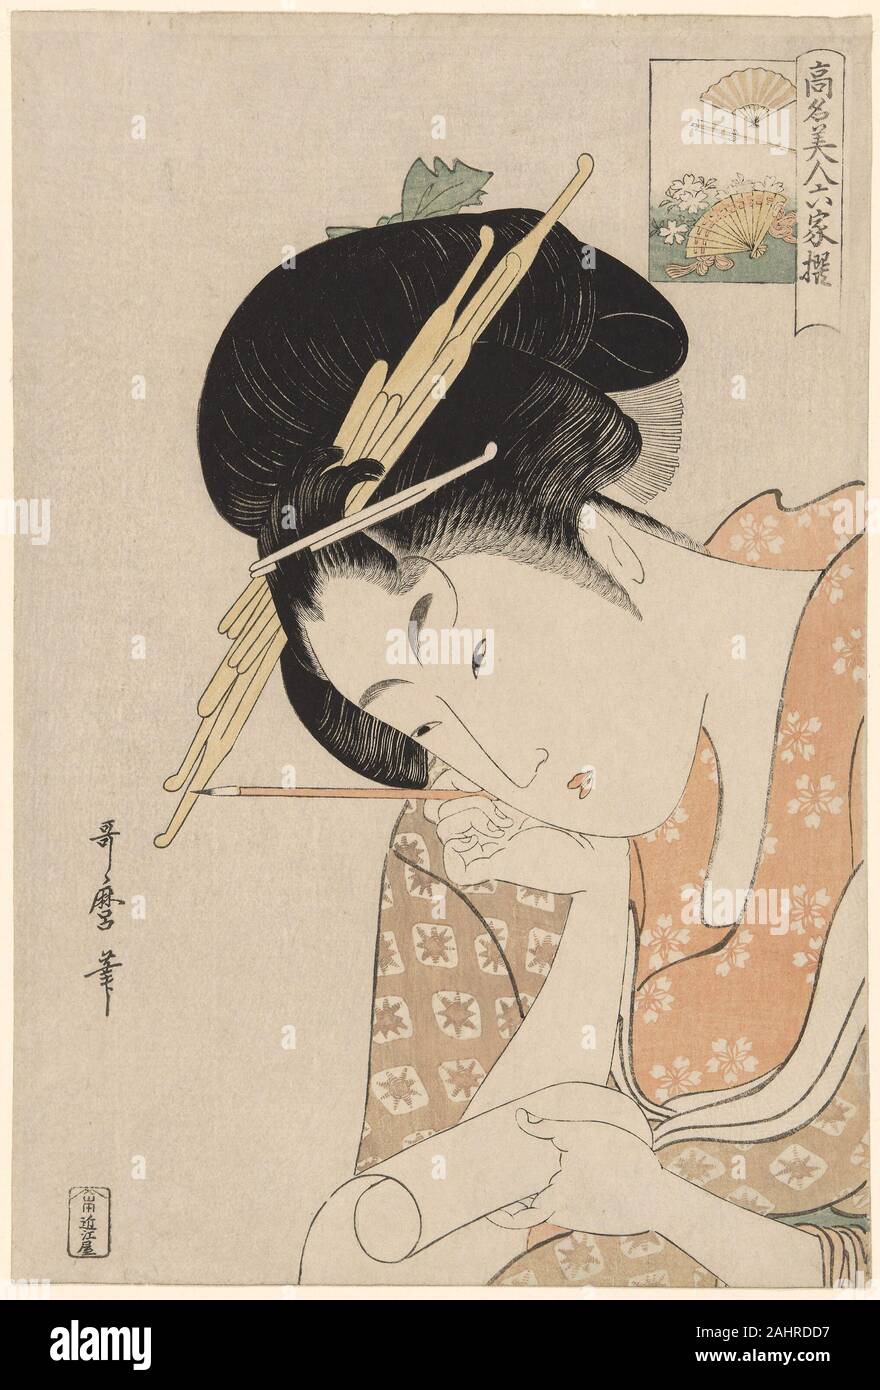 Kitagawa Utamaro. Hanaogi de l'Ogiya, de la série Beautés de renommée mondiale comparée à la Six poètes immortels (Komei bijin rokkasen). 1790-1801. Le Japon. Estampe oban couleur ; Banque D'Images